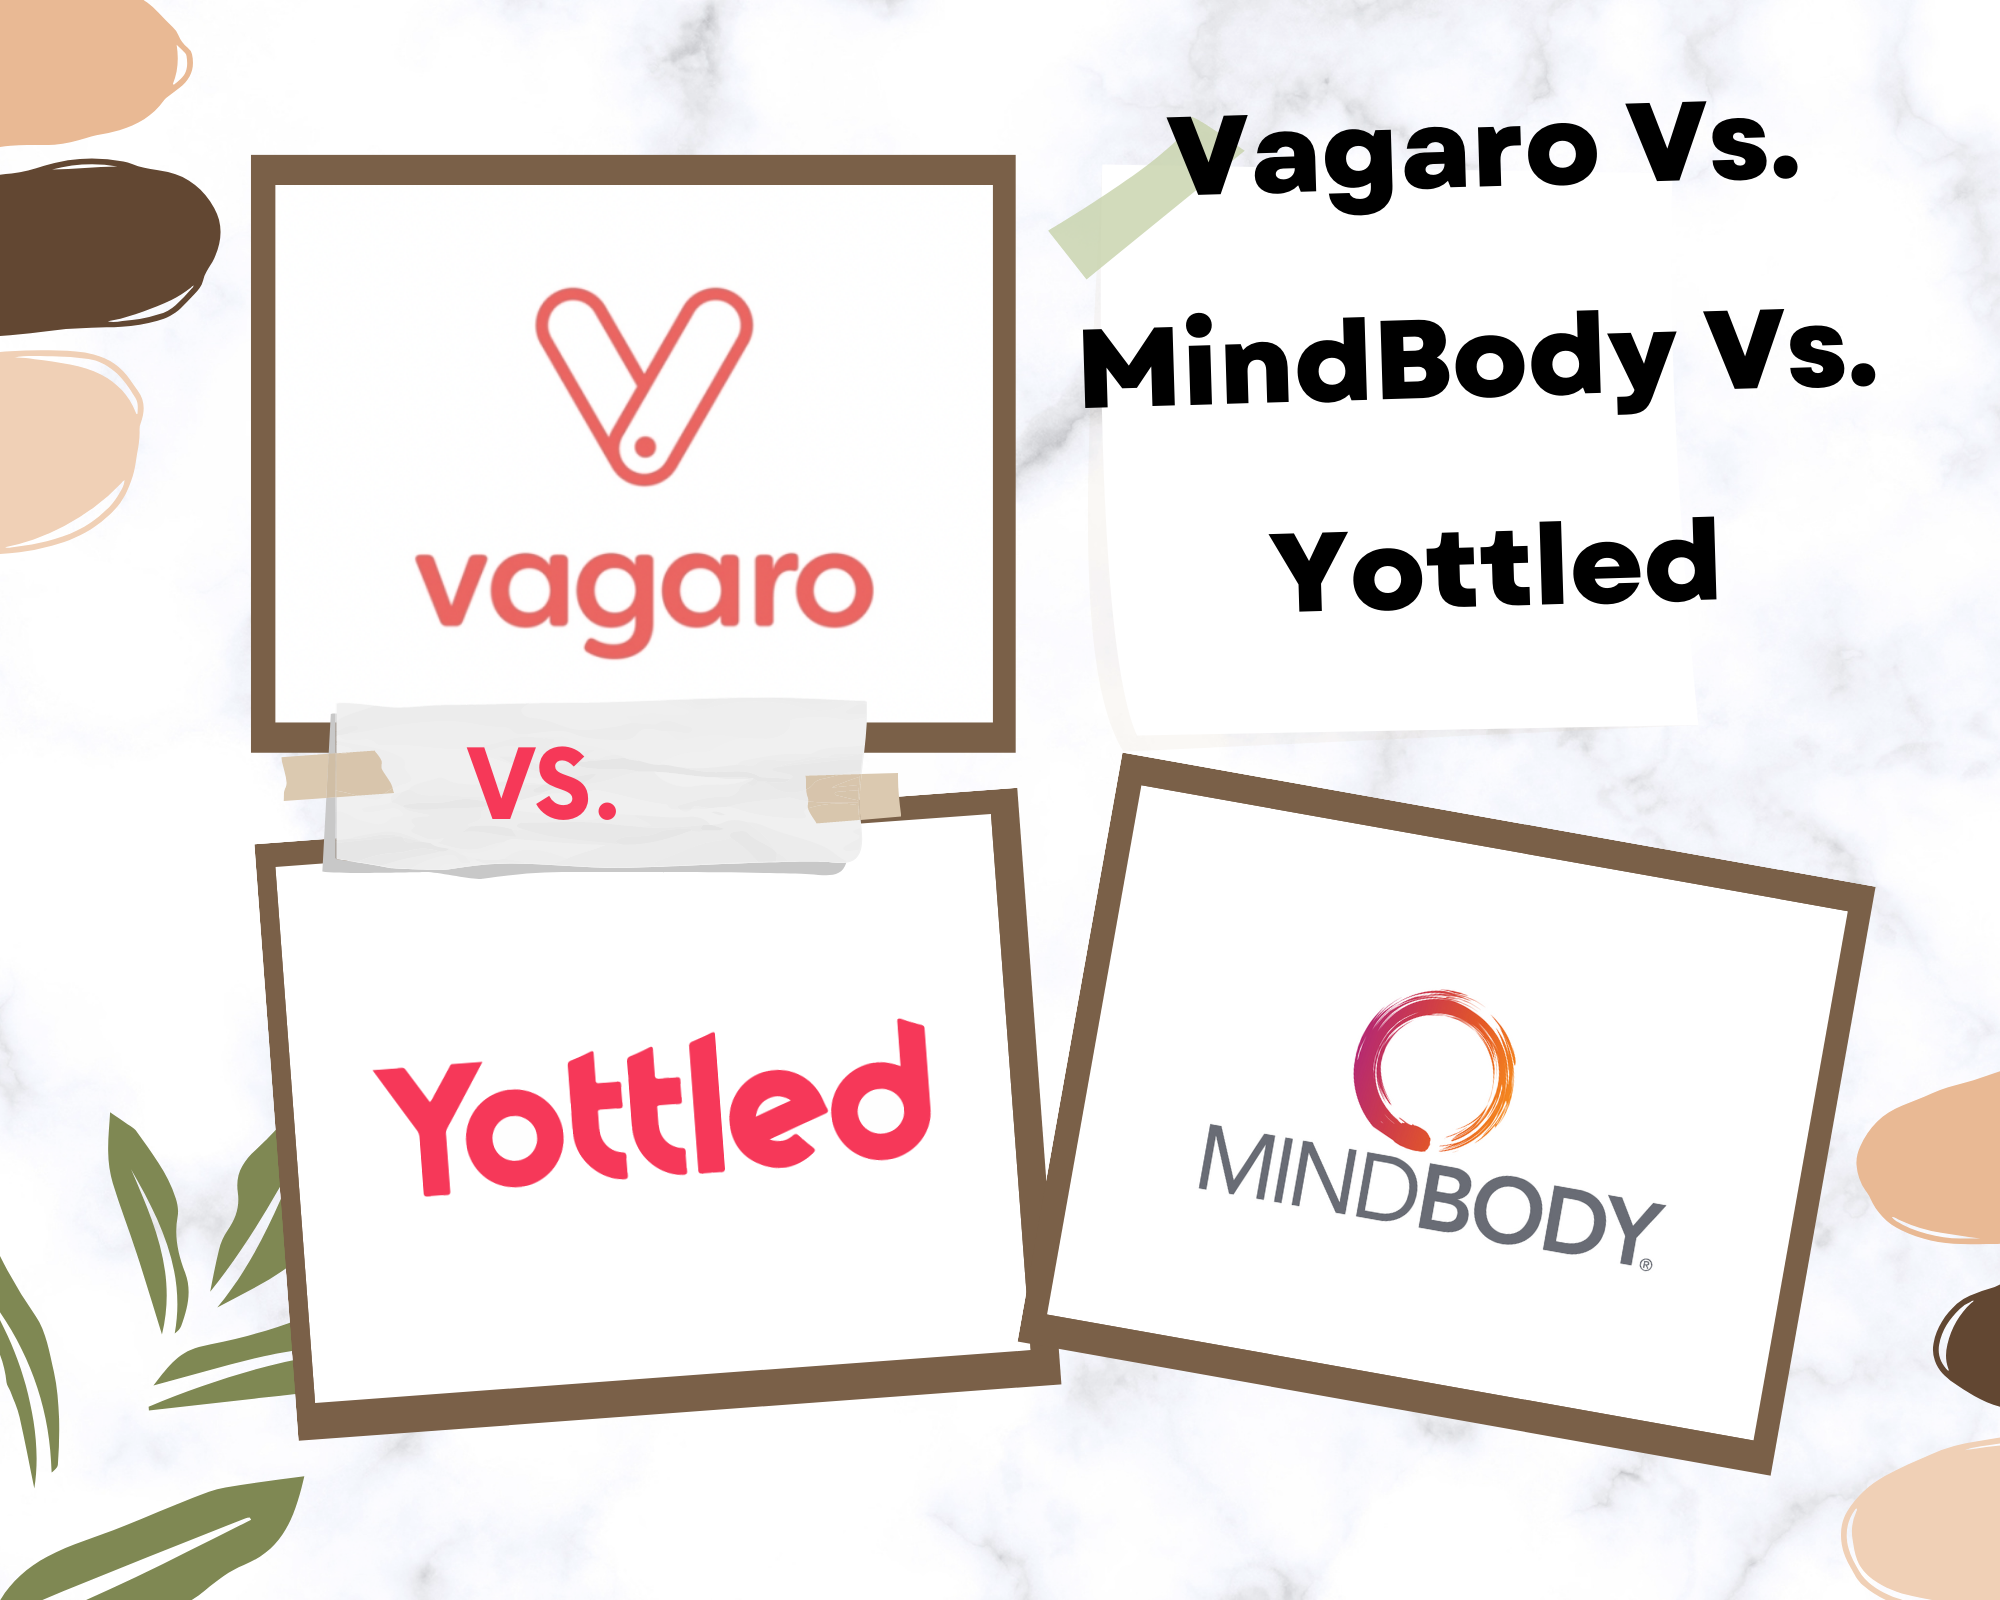 MindBody vs. Vagaro